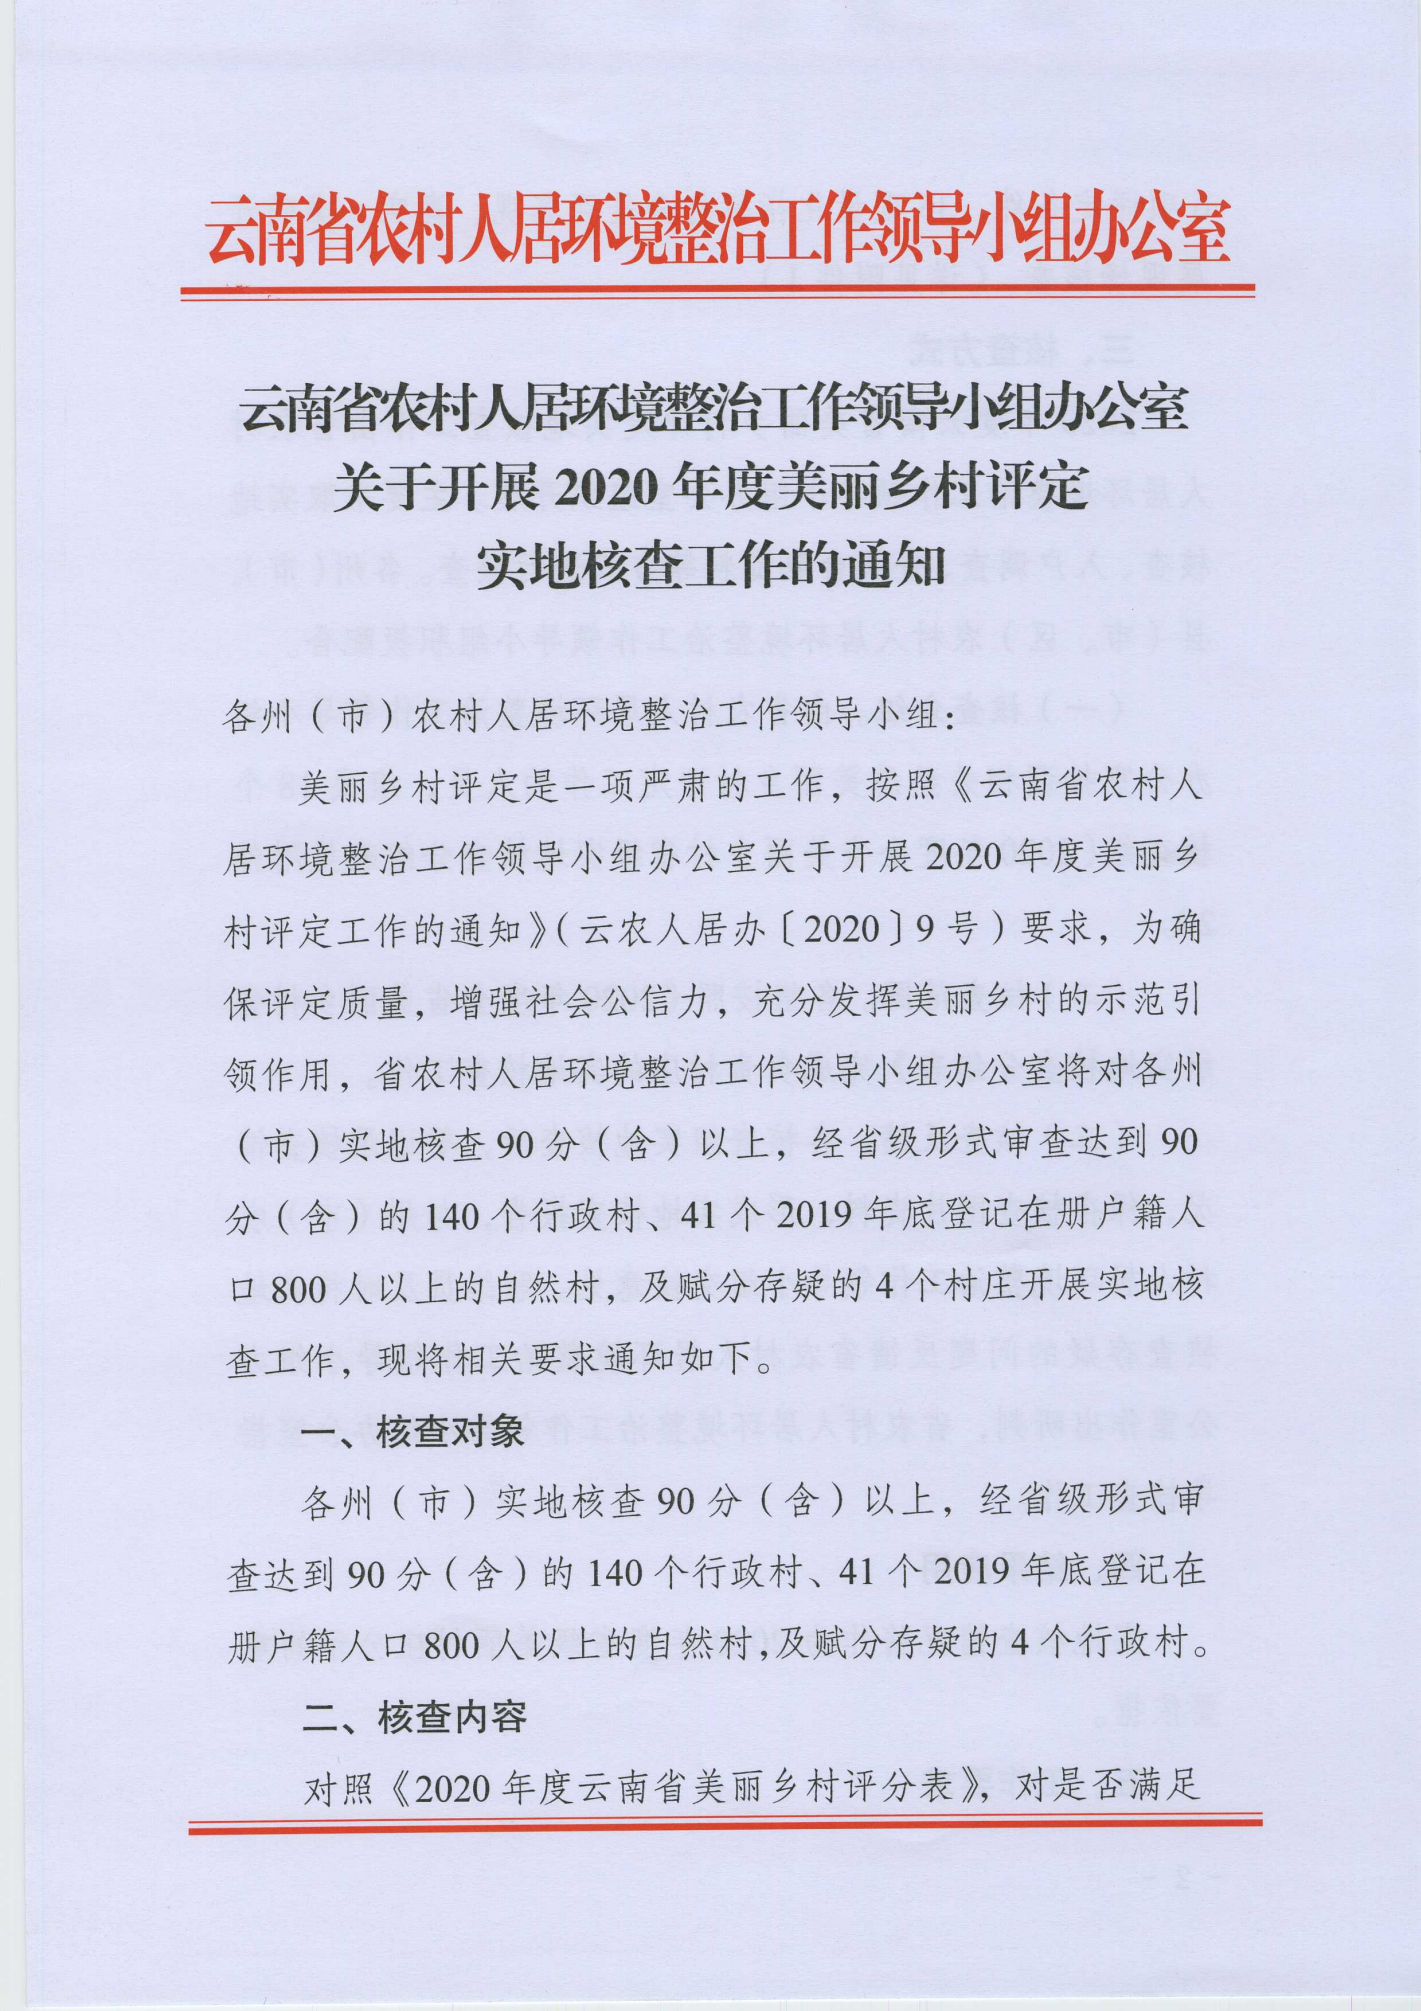 云南省农村人居环境整治工作领导小组办公室关于开展2020年度美丽乡村评定实地核查工作的通知